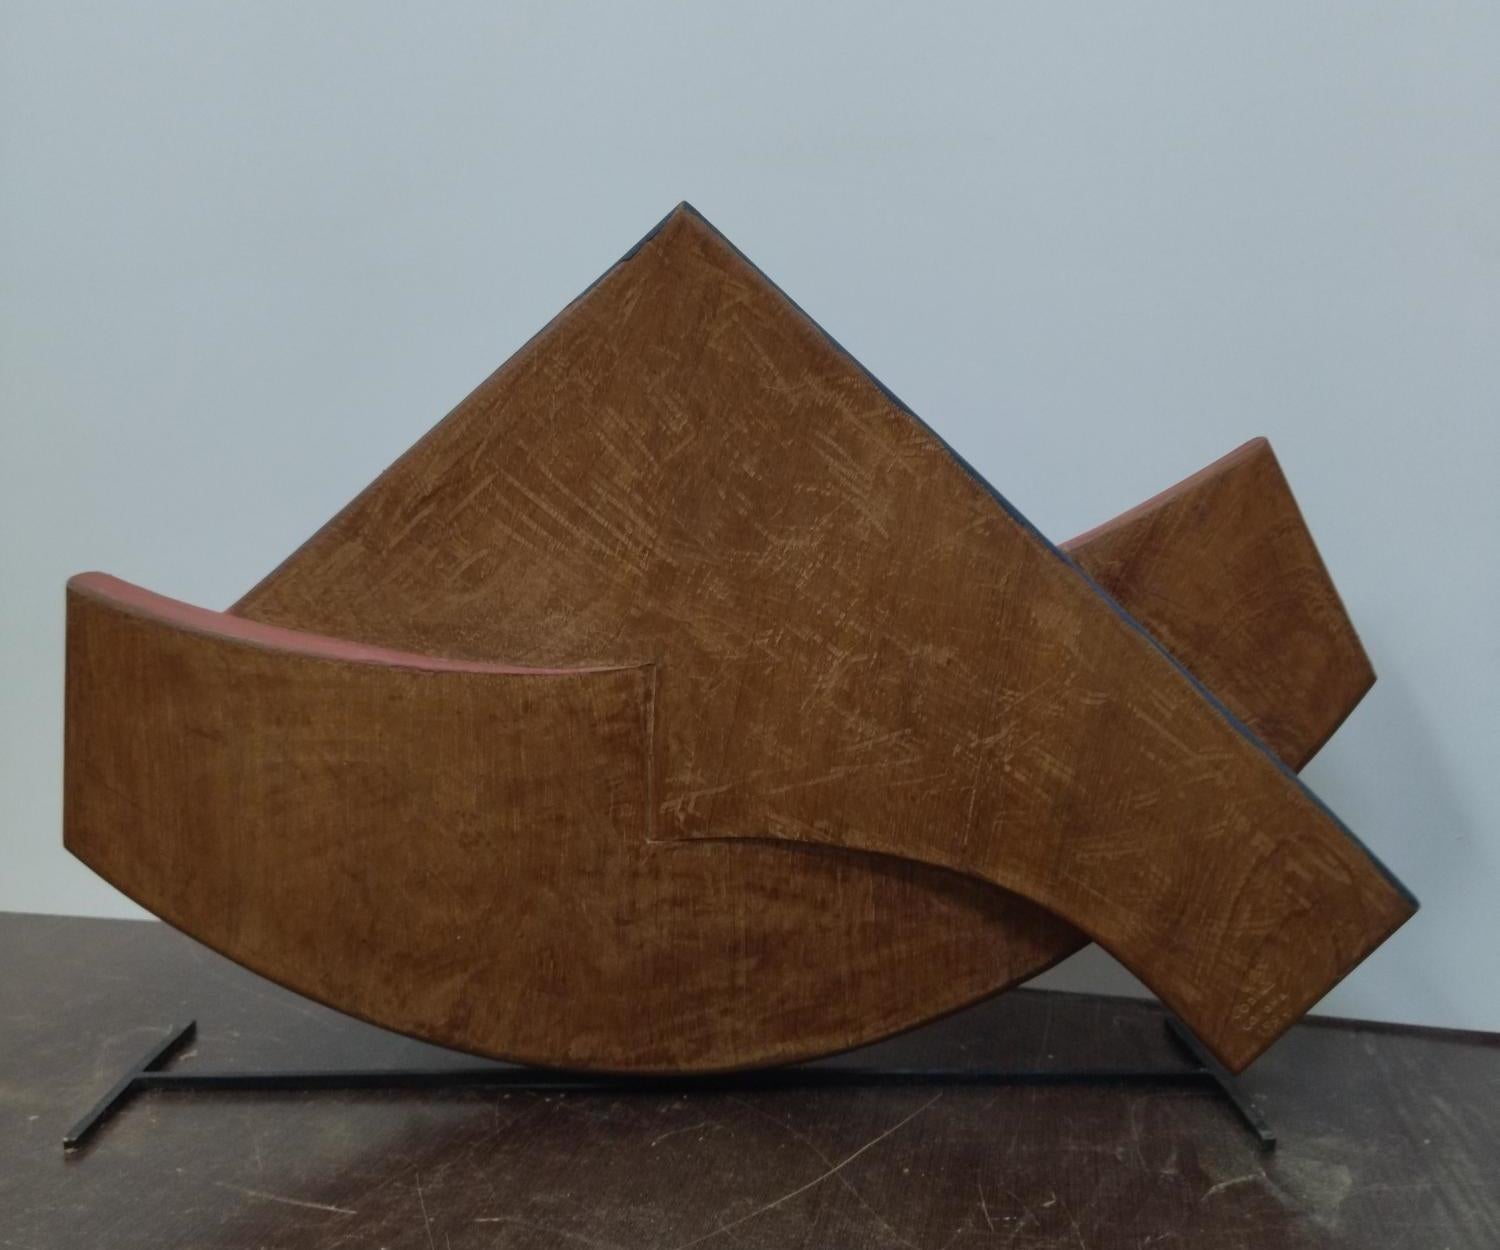  Codina Corona. 42 Boat   la barca  Original- wood realistic sculpture- - Sculpture by Josep Maria Codina Corona